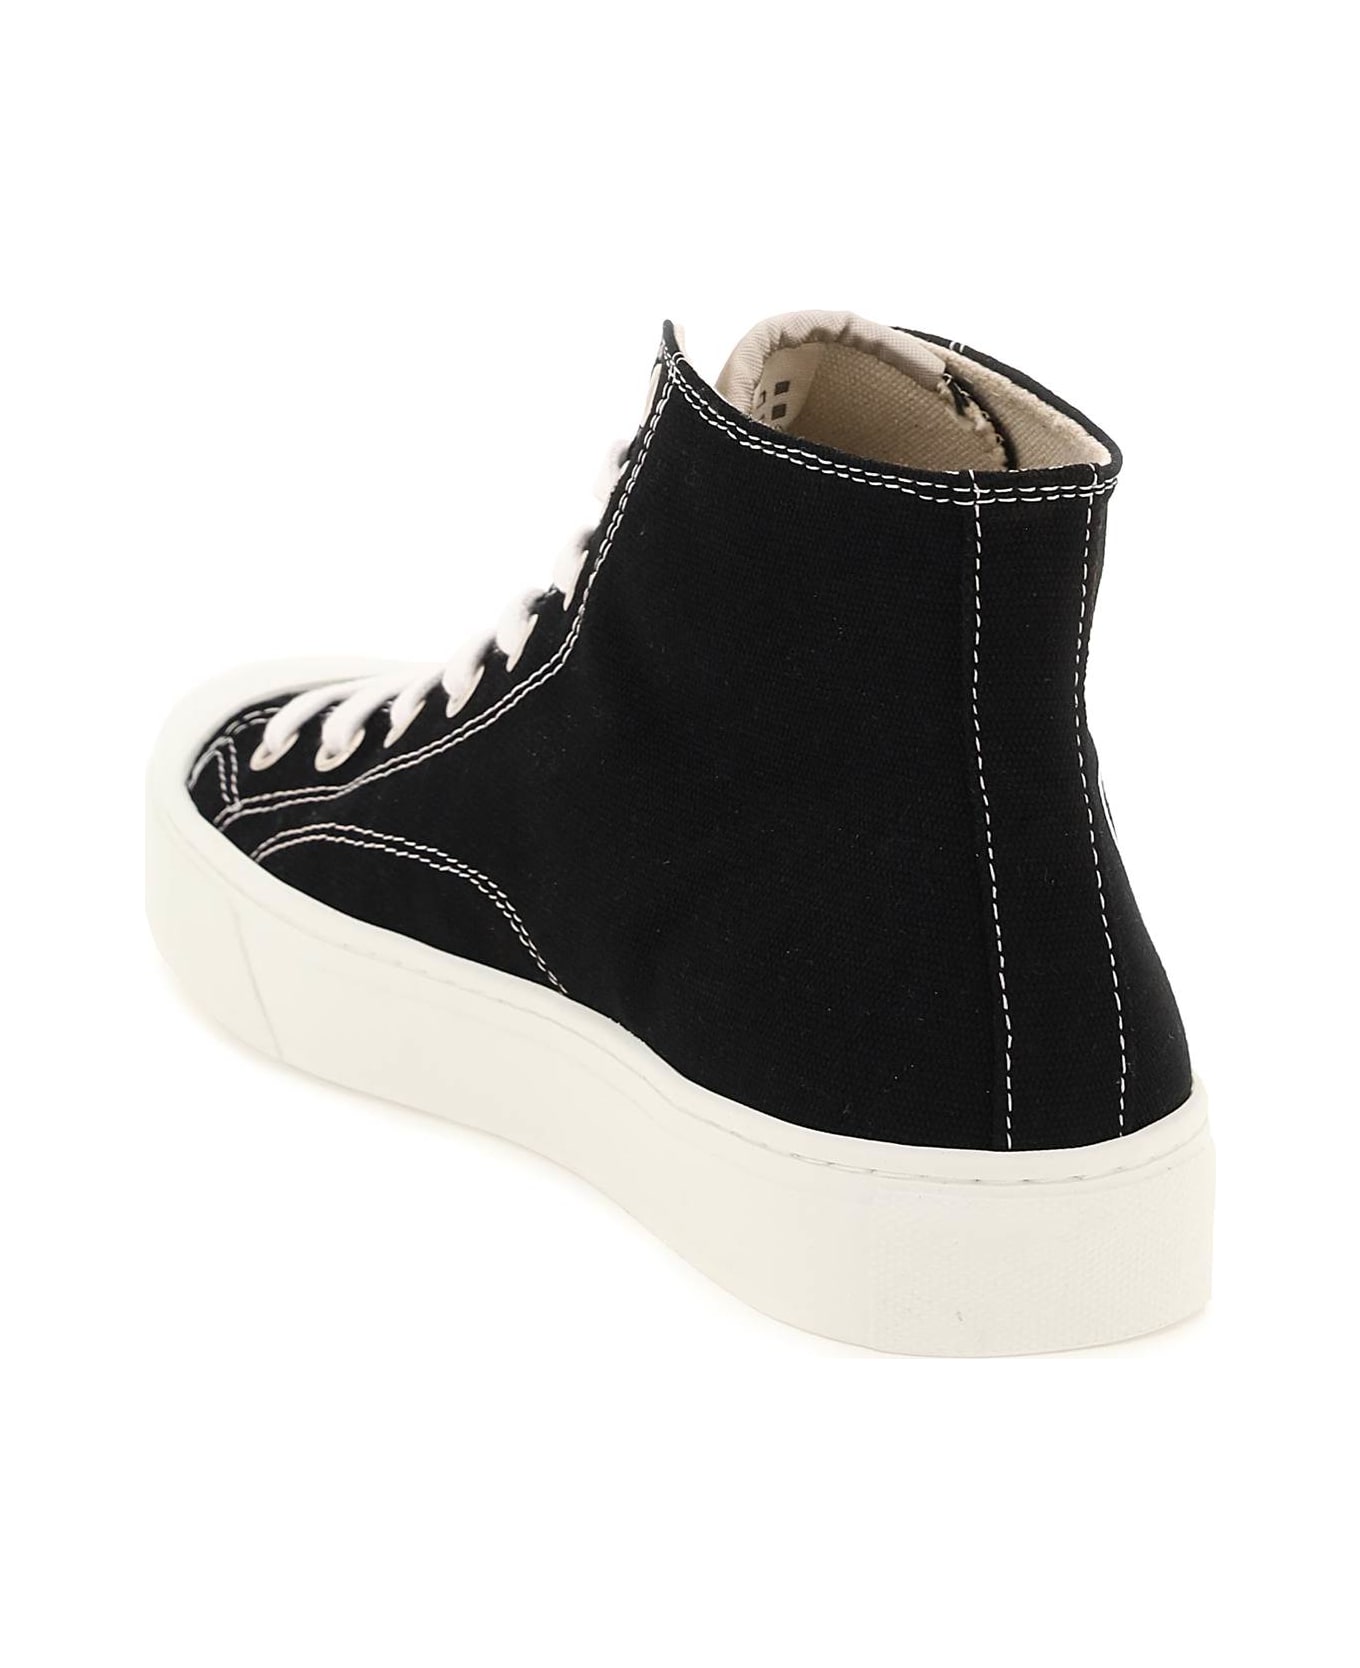 Vivienne Westwood Plimsoll High Top Sneakers - BLACK (Black)